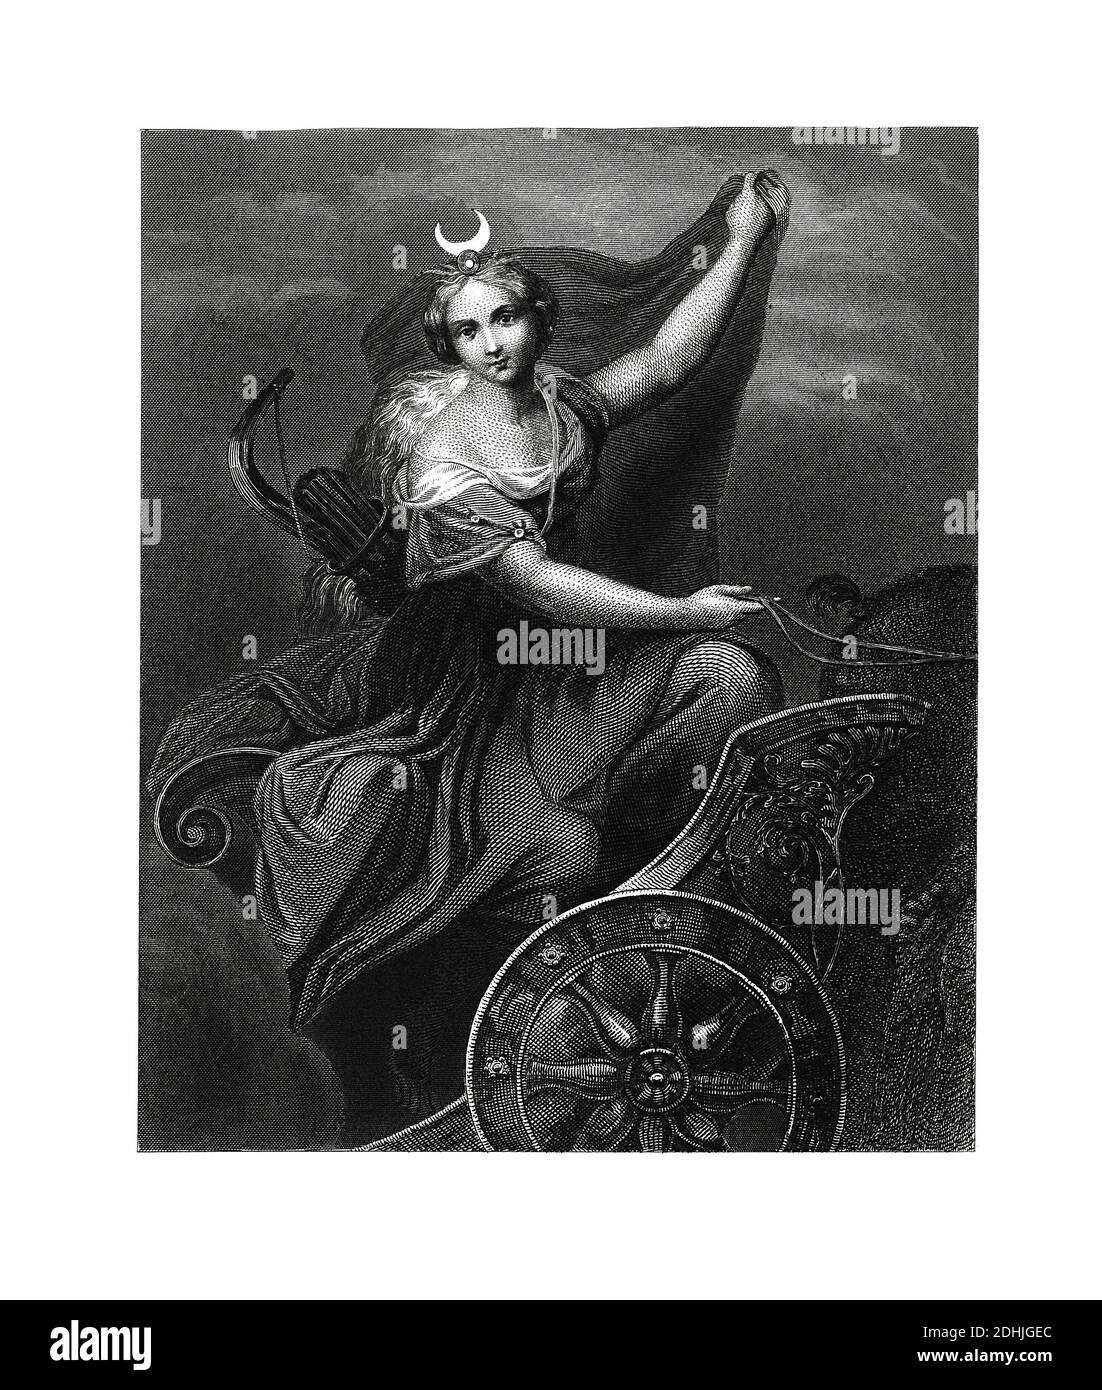 Oeuvre originale de Diana, la déesse de la chasse, de la lune et d'accouchement. Publié dans histoire illustrée des grandes nations : de l'oreille Banque D'Images